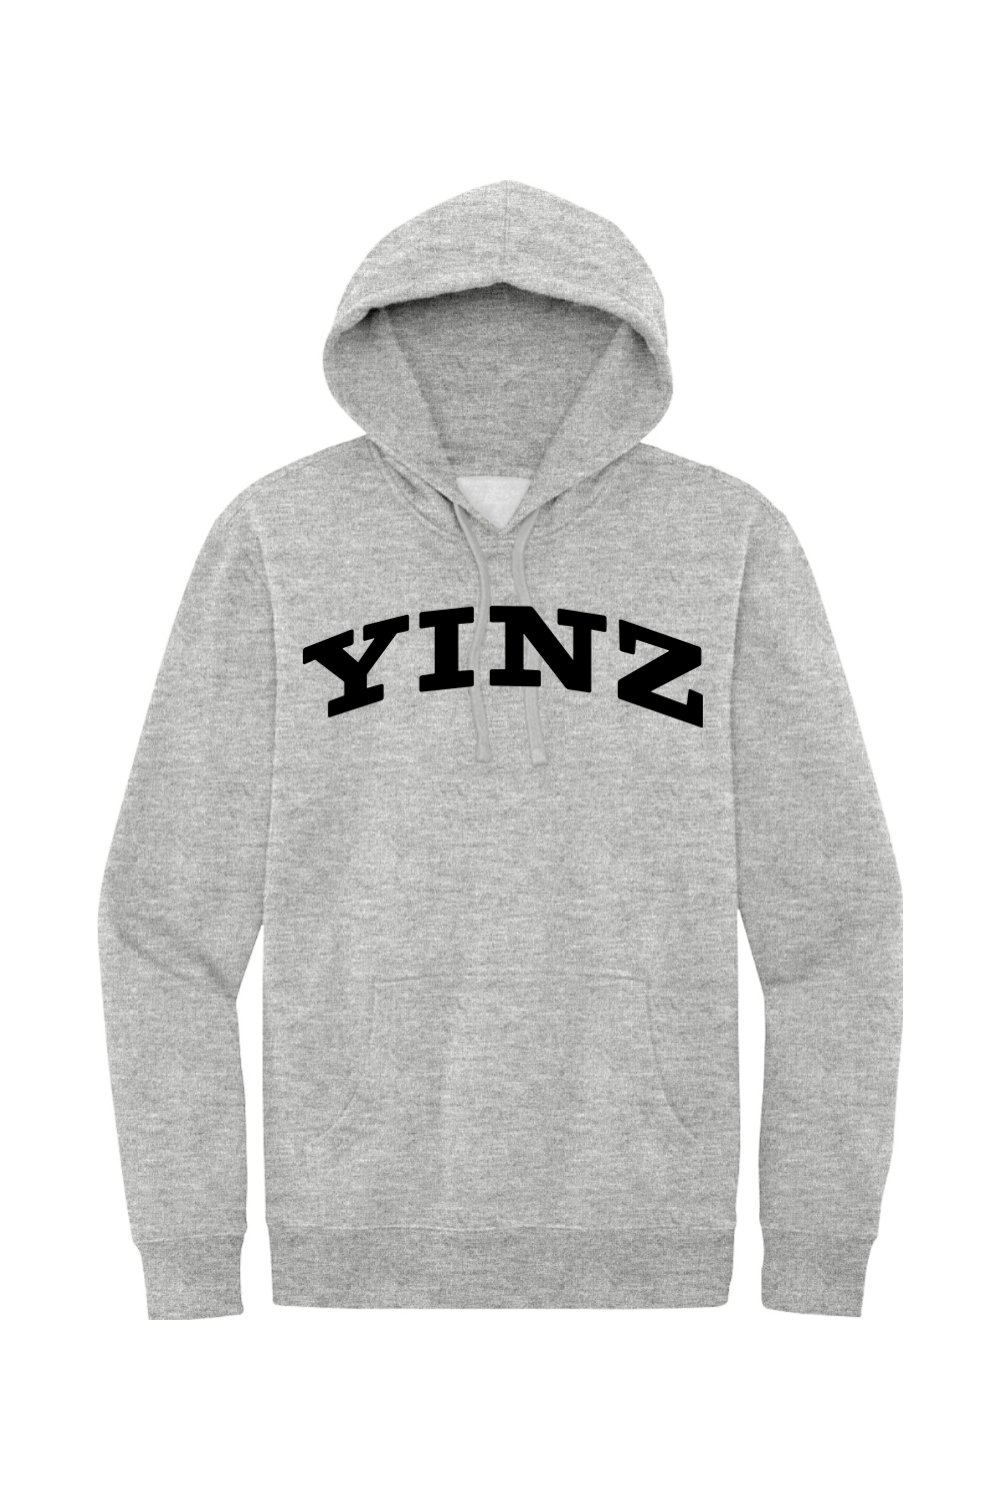 YINZ - Collegiate - Fleece Hoodie - Yinzylvania